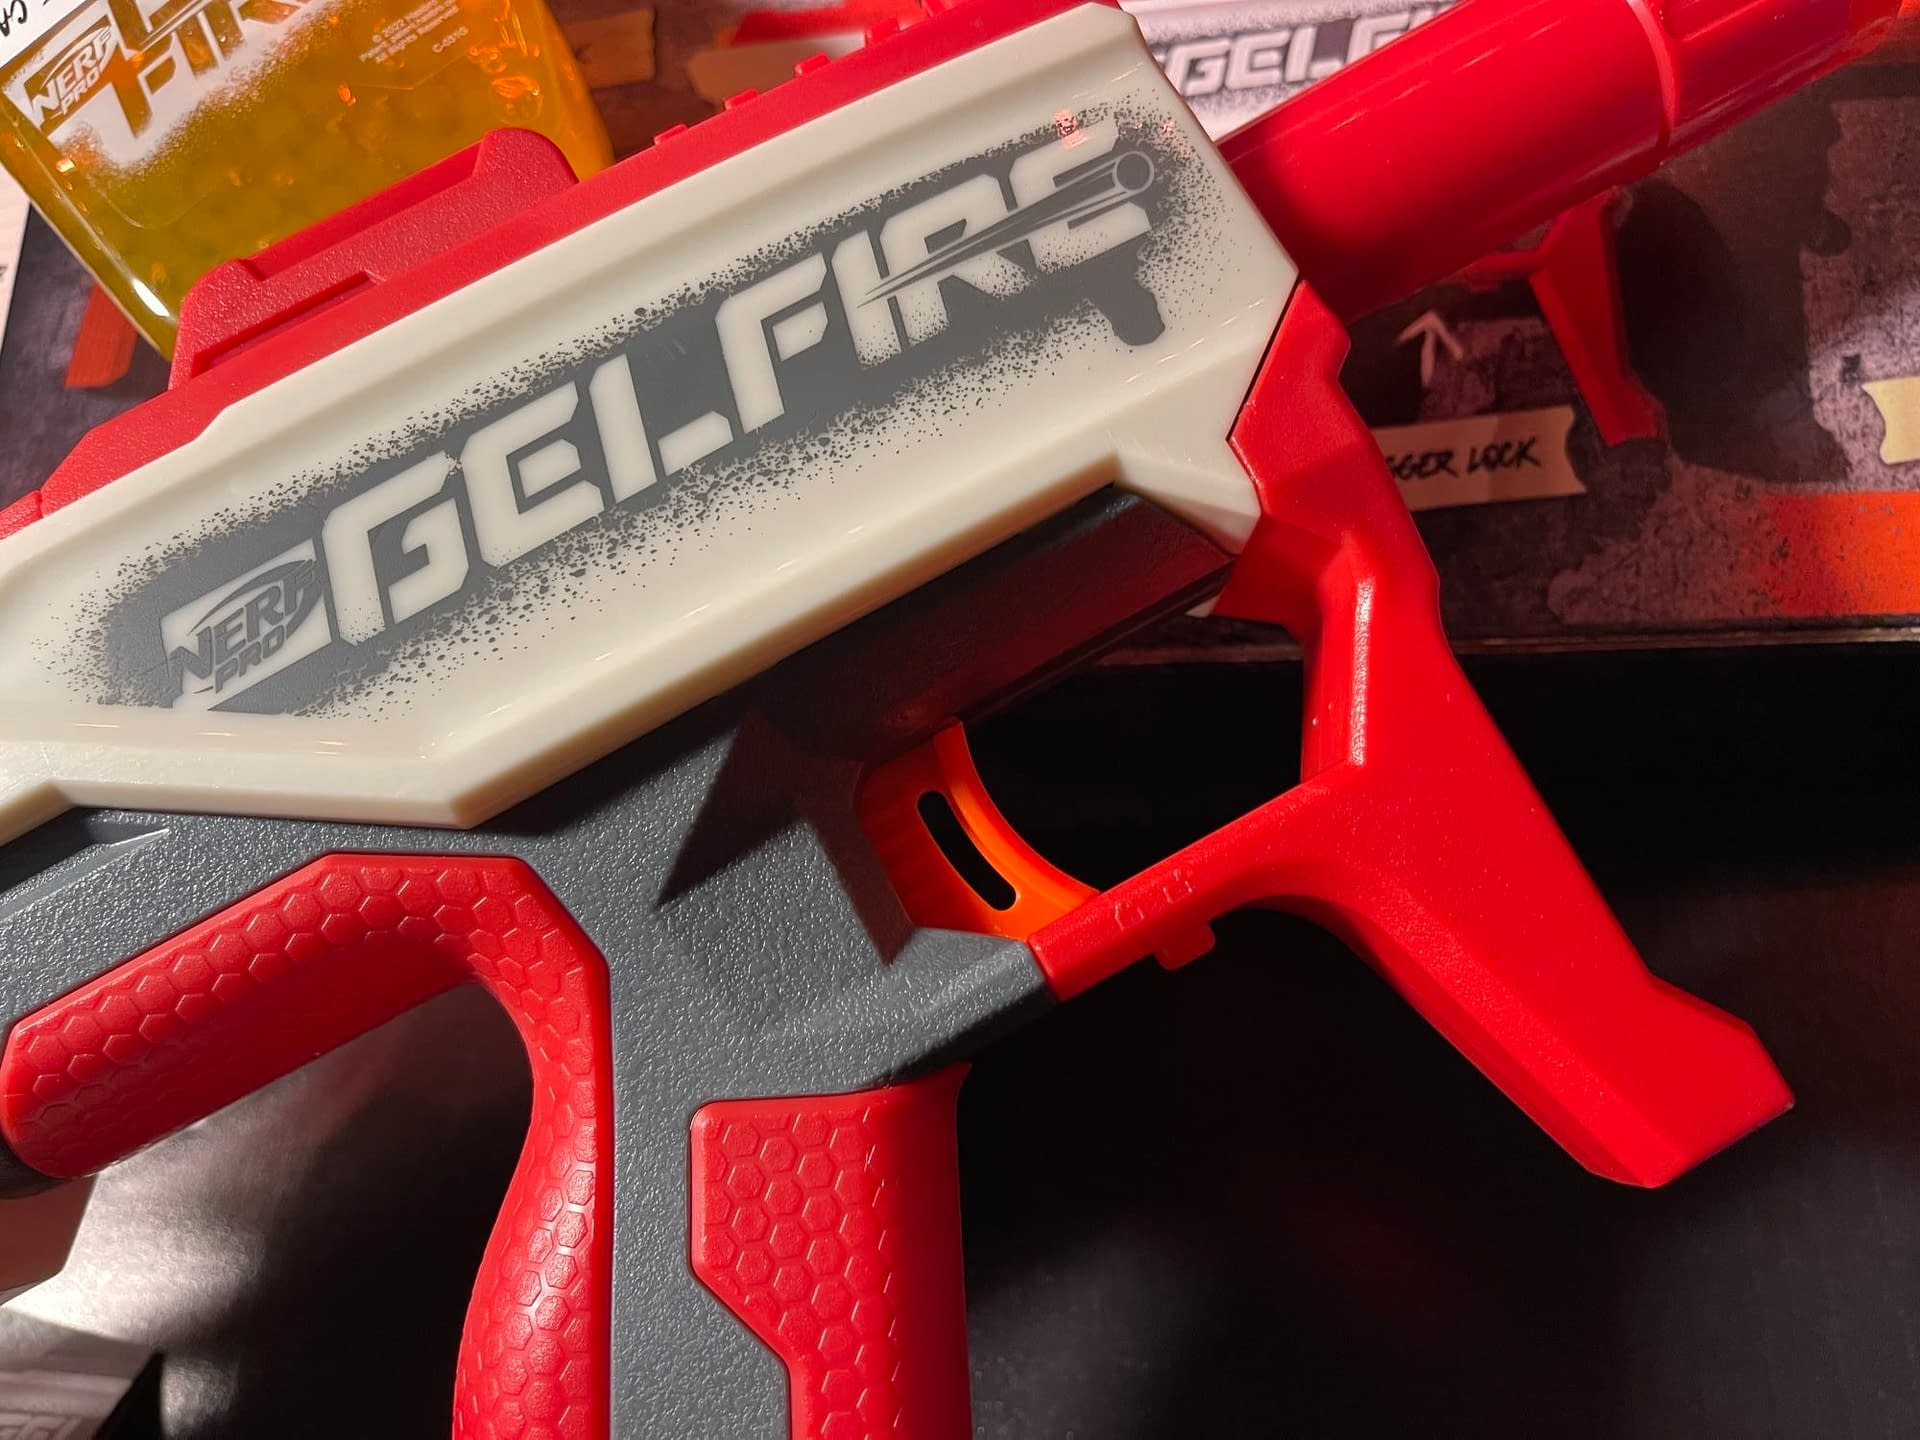 NERF Pro Gelfire Mythic Blaster